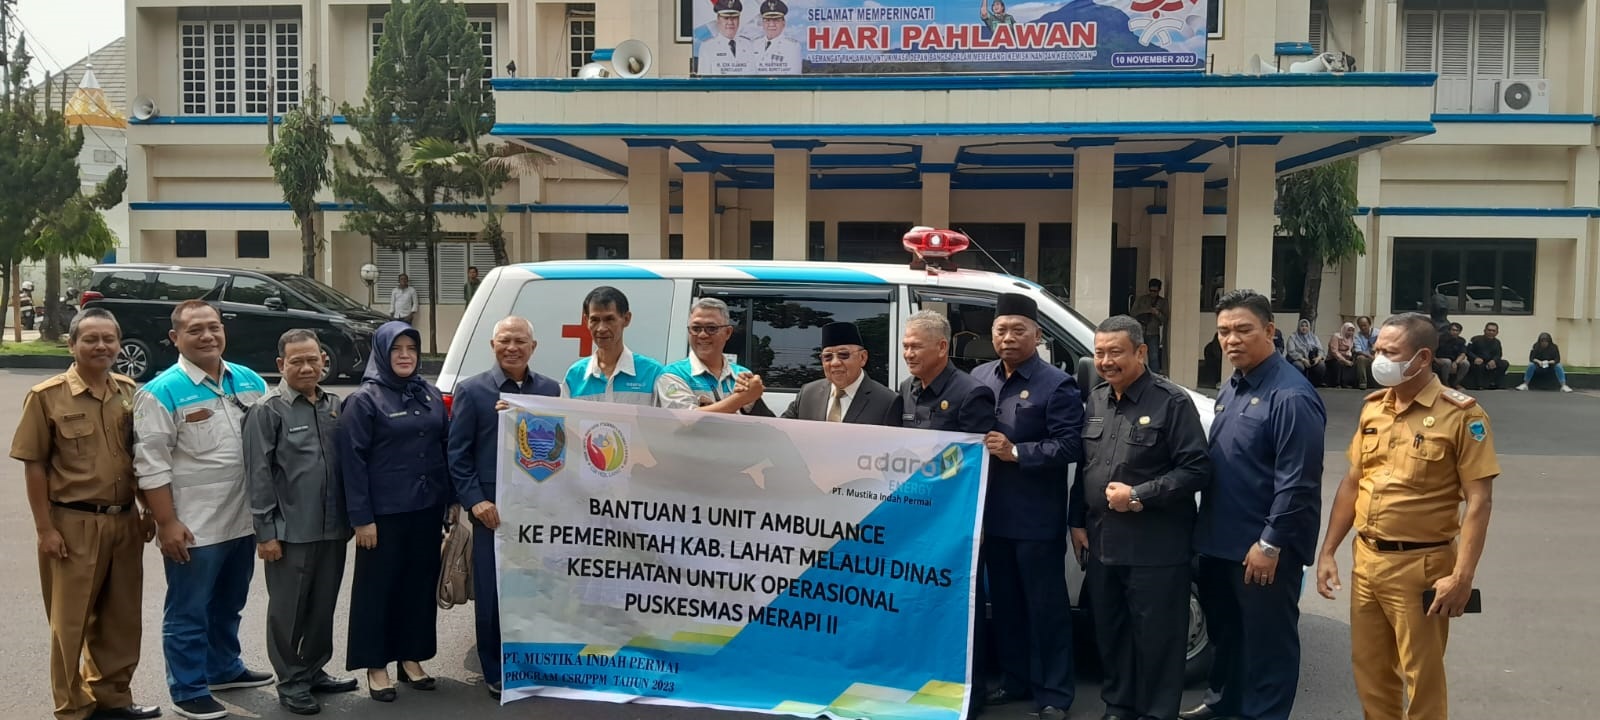 Bantuan Mobil Ambulance PT MIP untuk Mendukung Pelayanan Prima Masyarakat dan Para Pejuang Kesehatan Merapi II